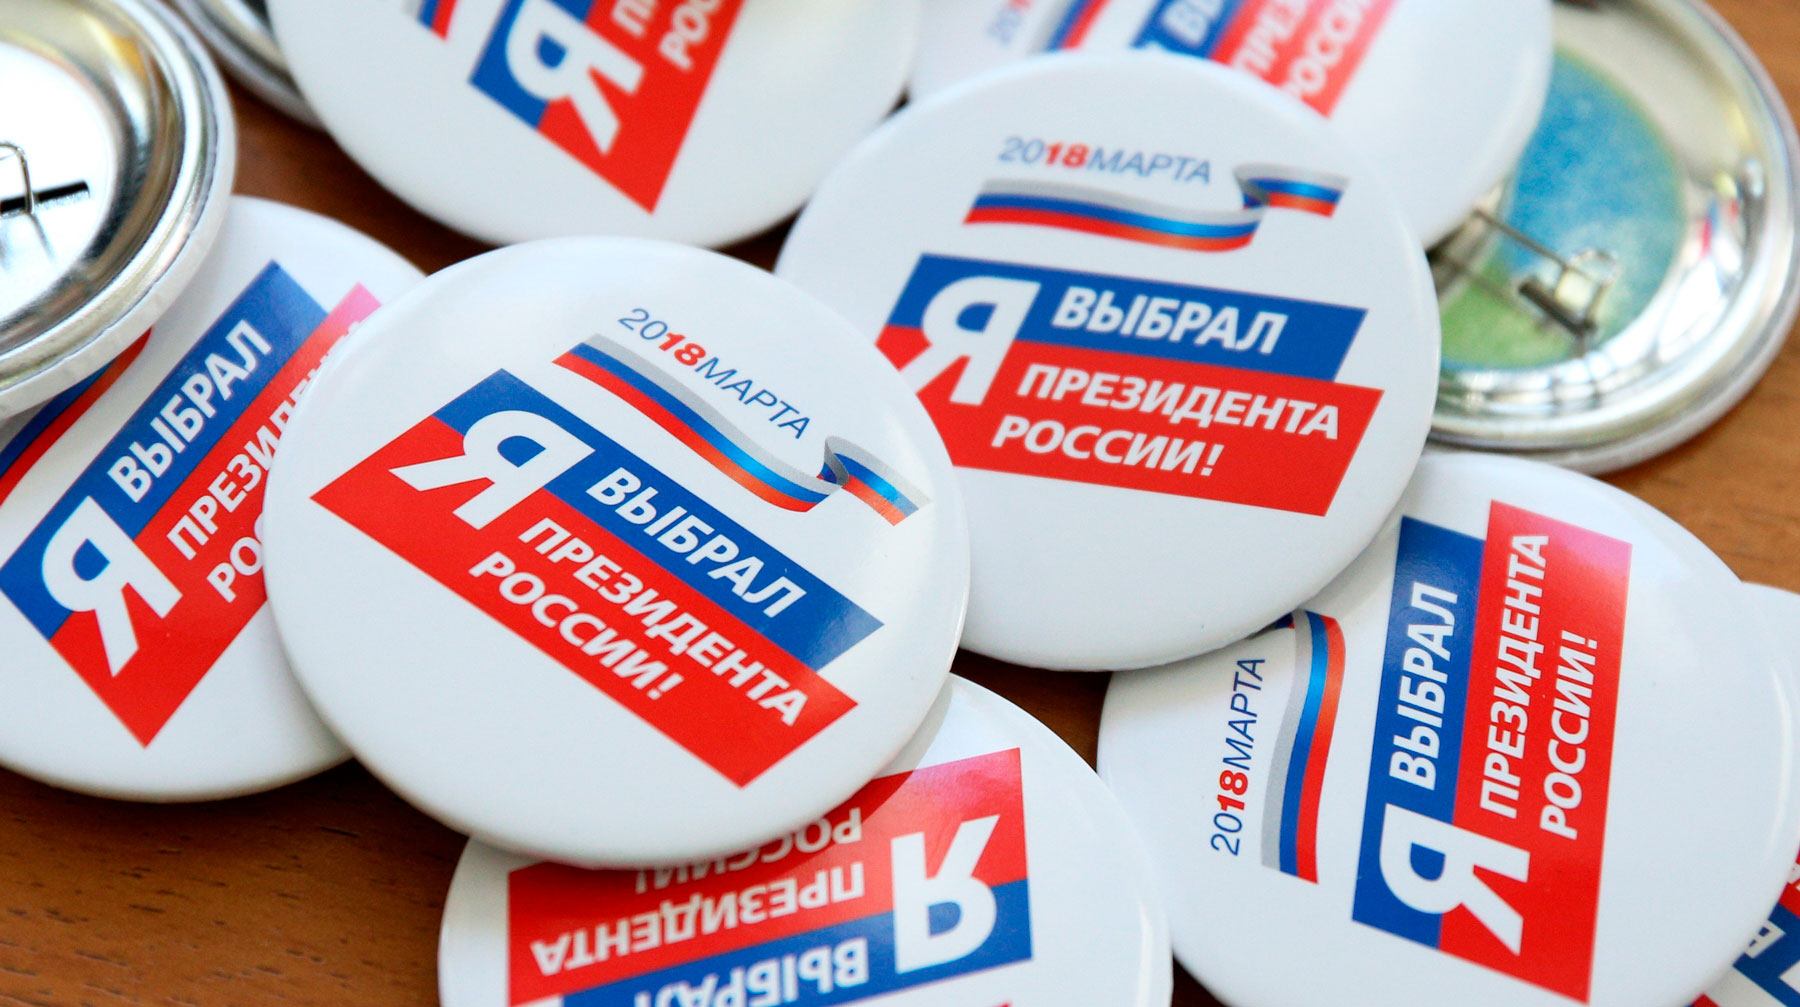 «Шторм» выяснил, как осуществляется контроль за избирателями Фото: © Агентство Москва/Зыков Кирилл